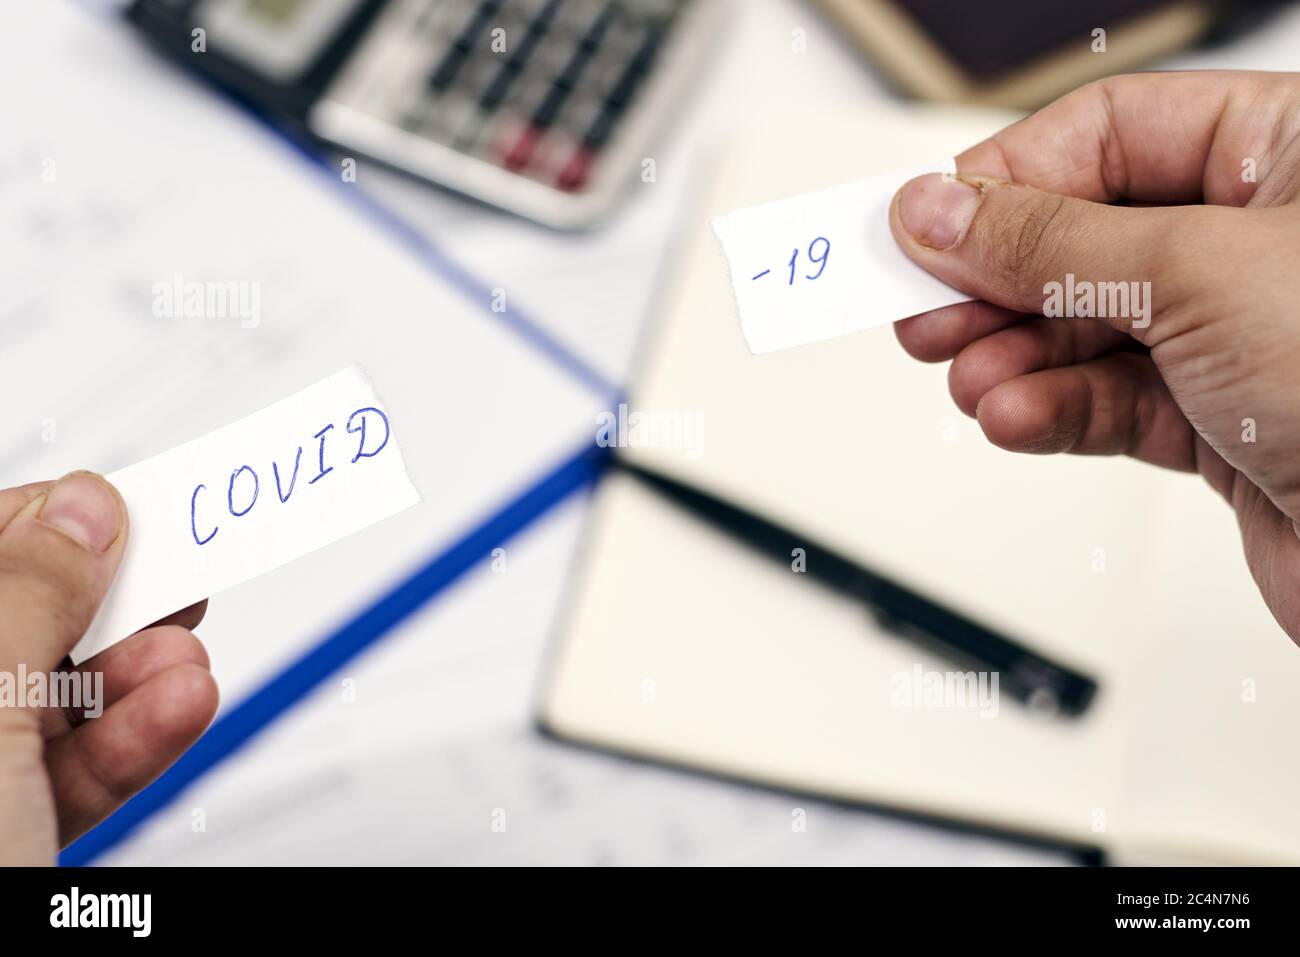 Homme tenant un morceau de papier déchiré avec le mot 'COVID-19' dessus. Surmonter le concept COVID-19 Banque D'Images